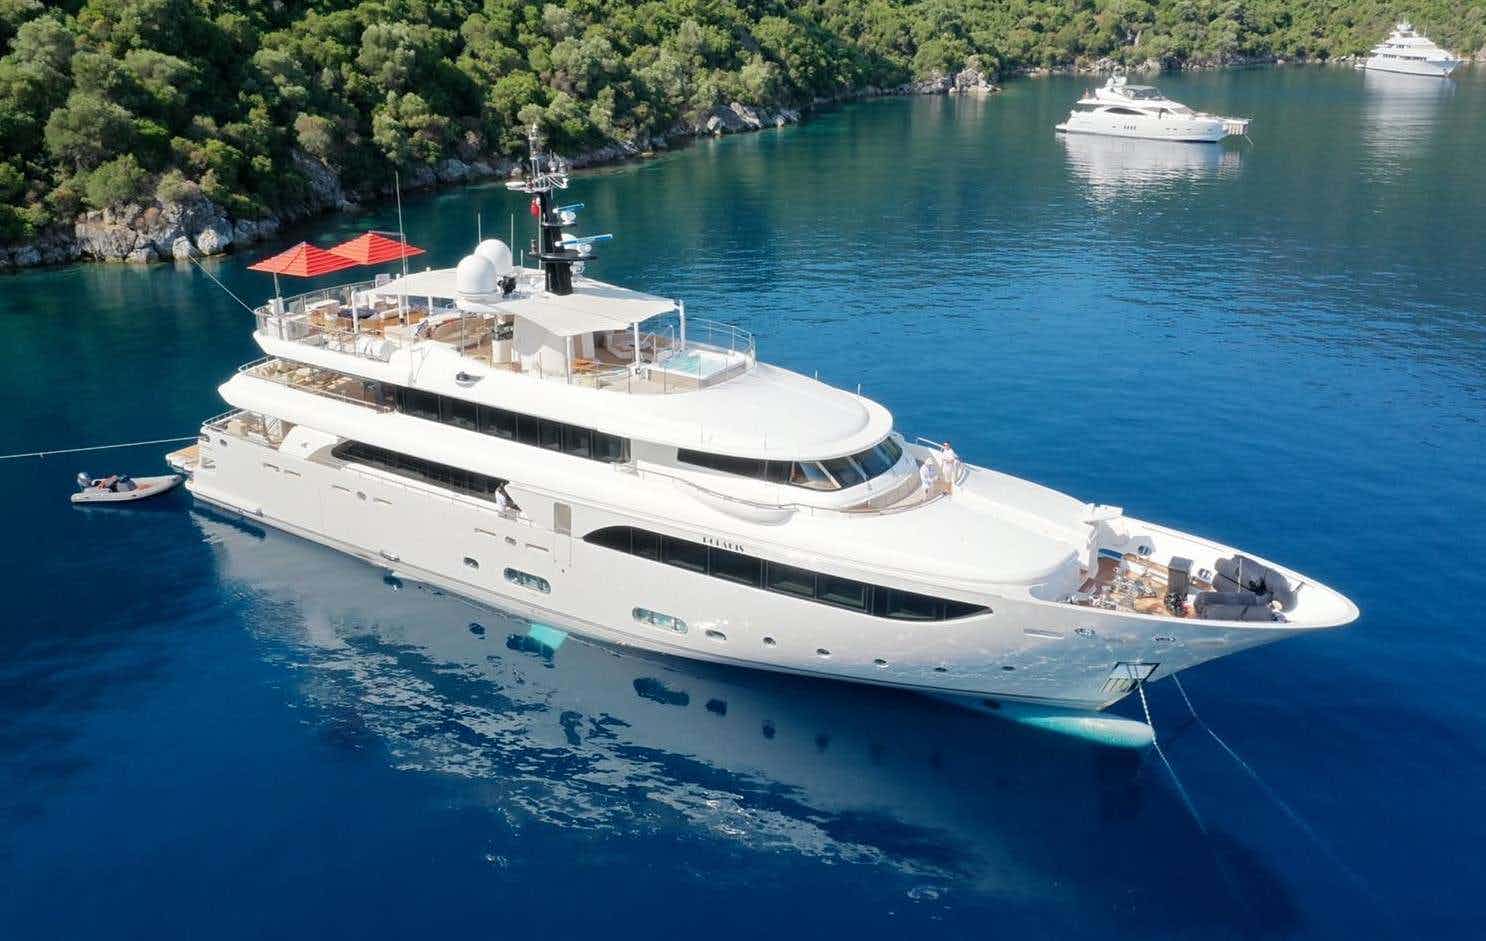 POLARIS - Yacht Charter Angra do Heroismo & Boat hire in Croatia, Greece, Turkey 1